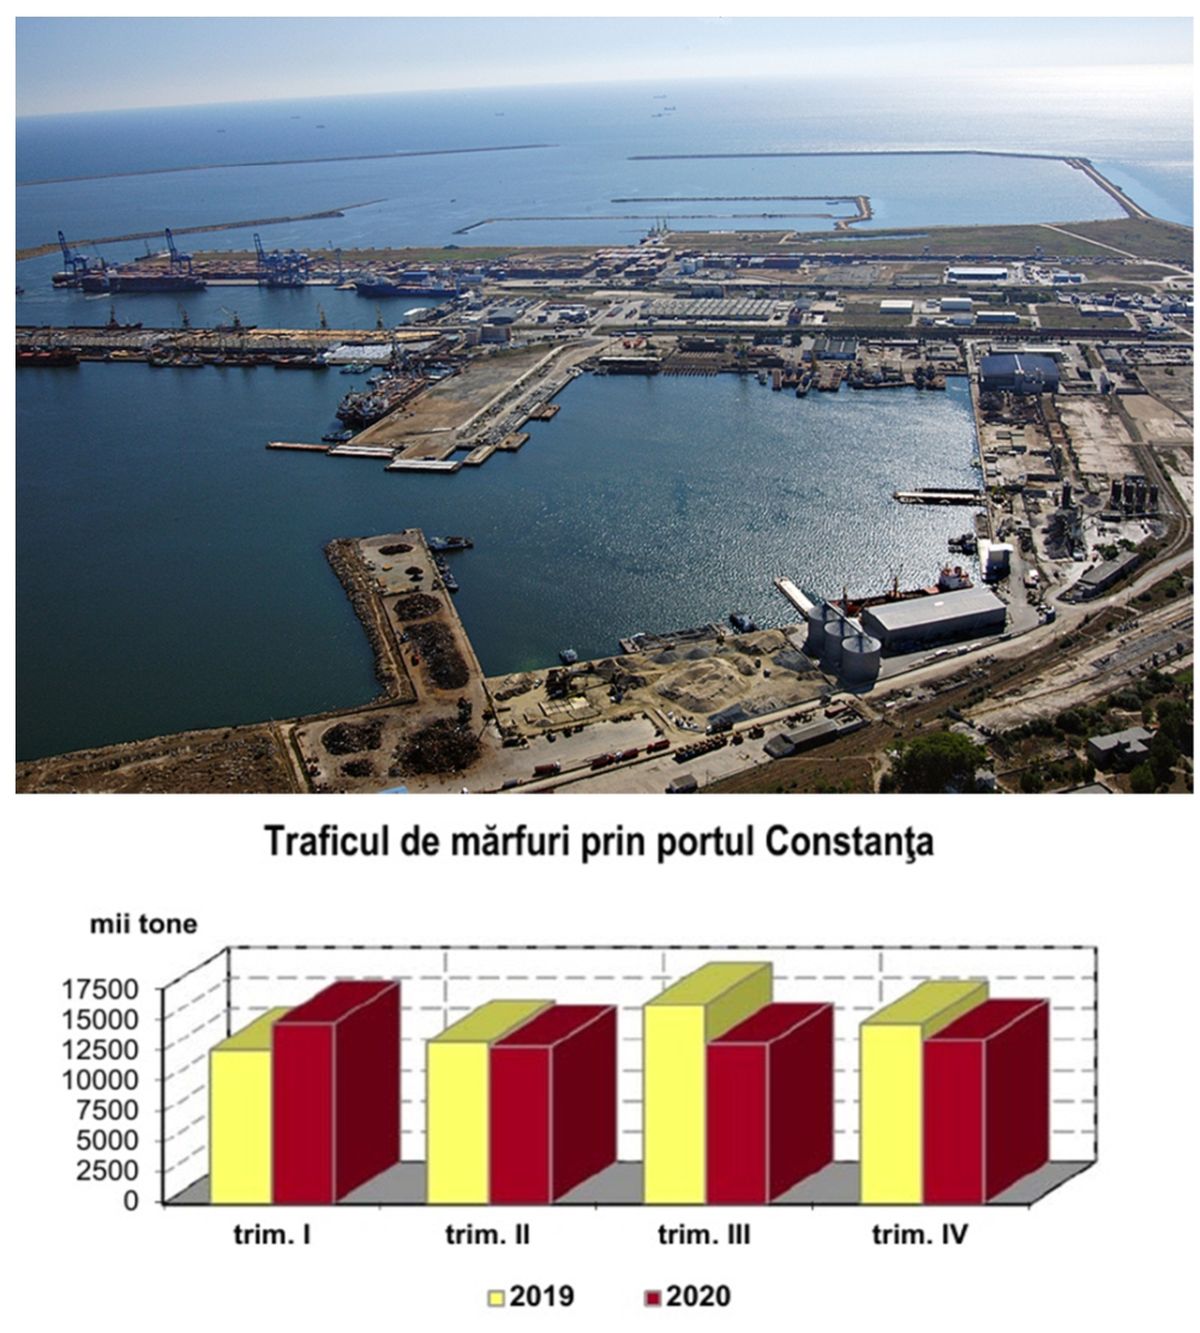 Traficul de mărfuri a scăzut în Portul Constanța și pe Canalul Dunăre Marea Neagră